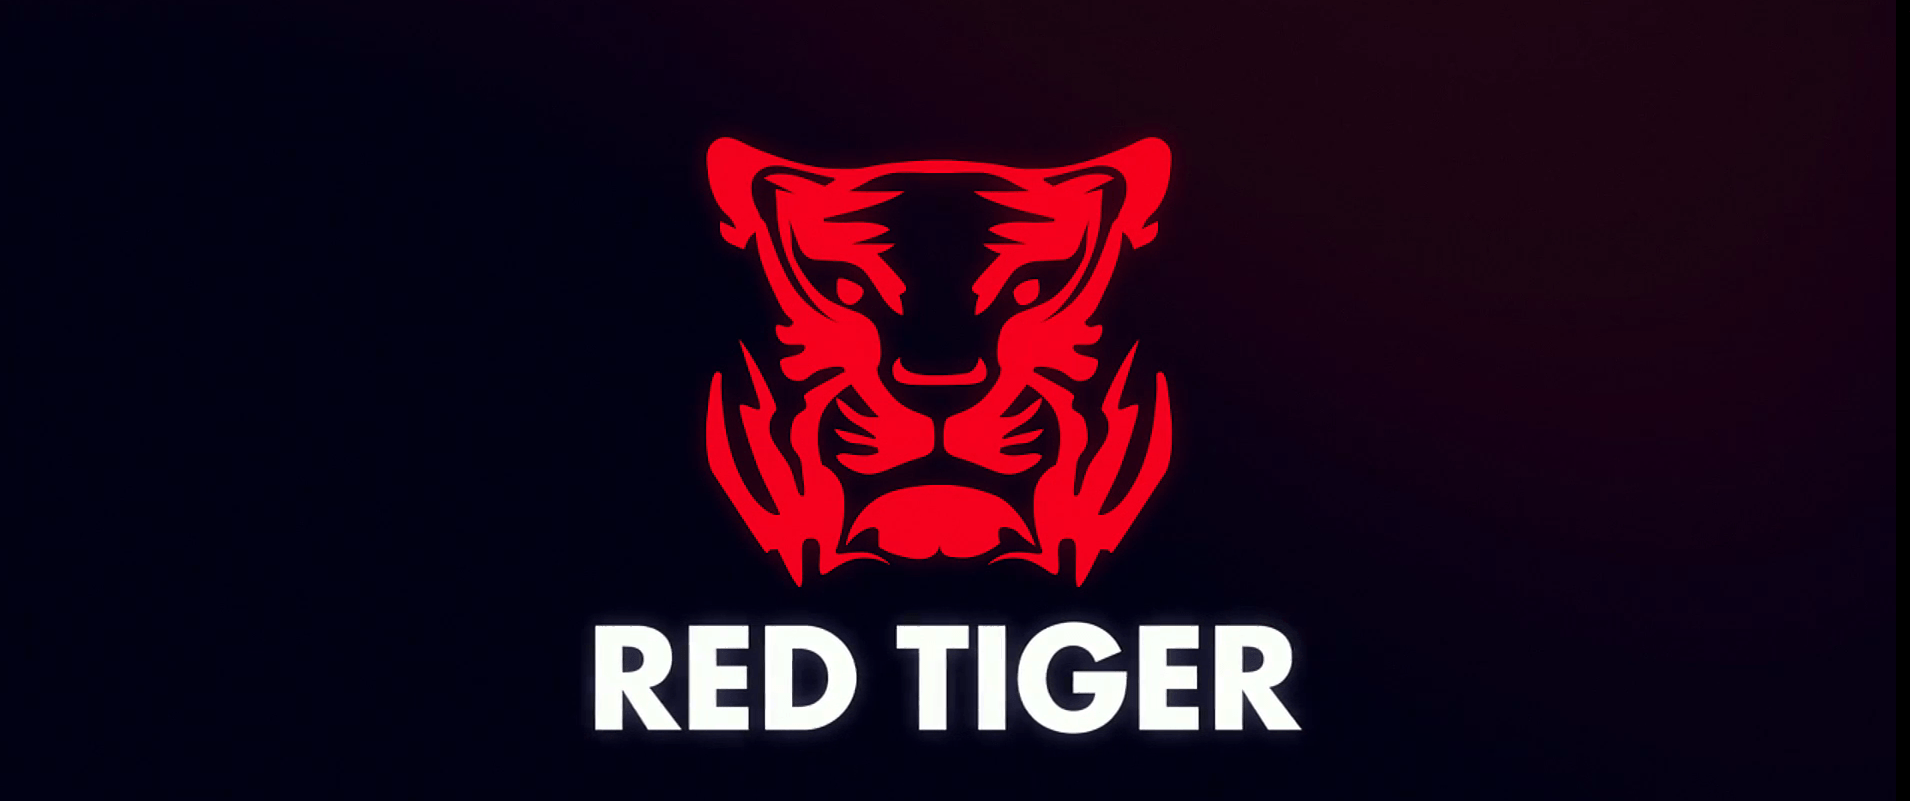 Red Tiger Slot Provider